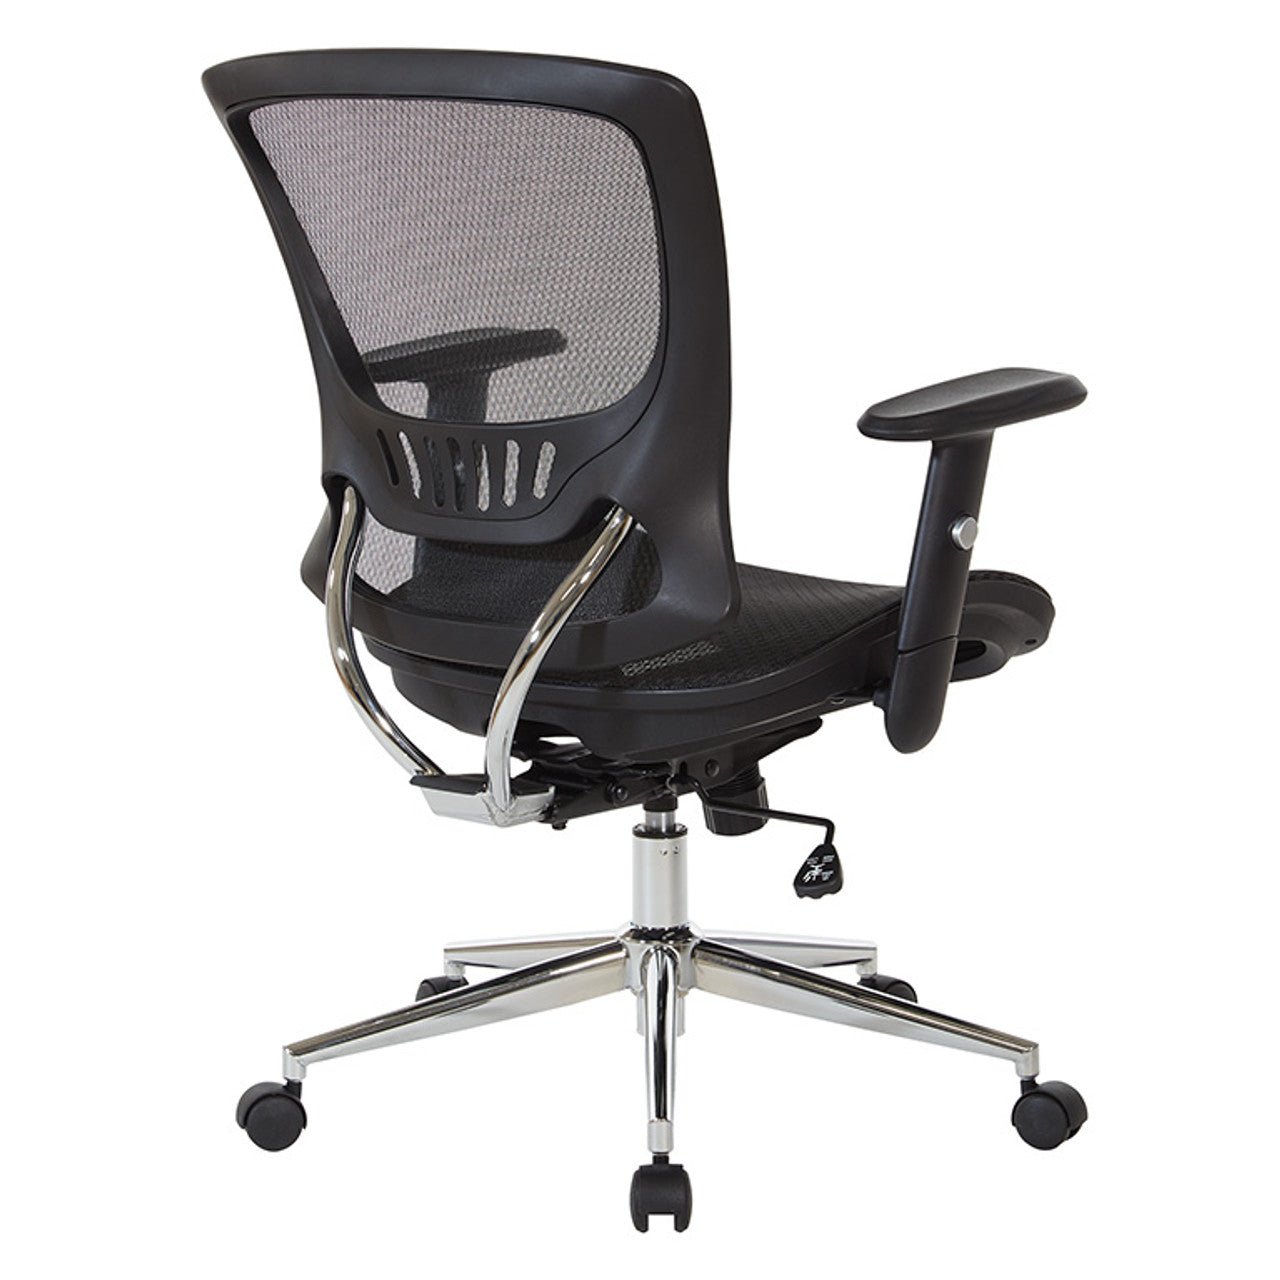 WorkSmart Mesh Screen Seat and Back Chair EM98910C-3 - Office Desks - EM98910C-3